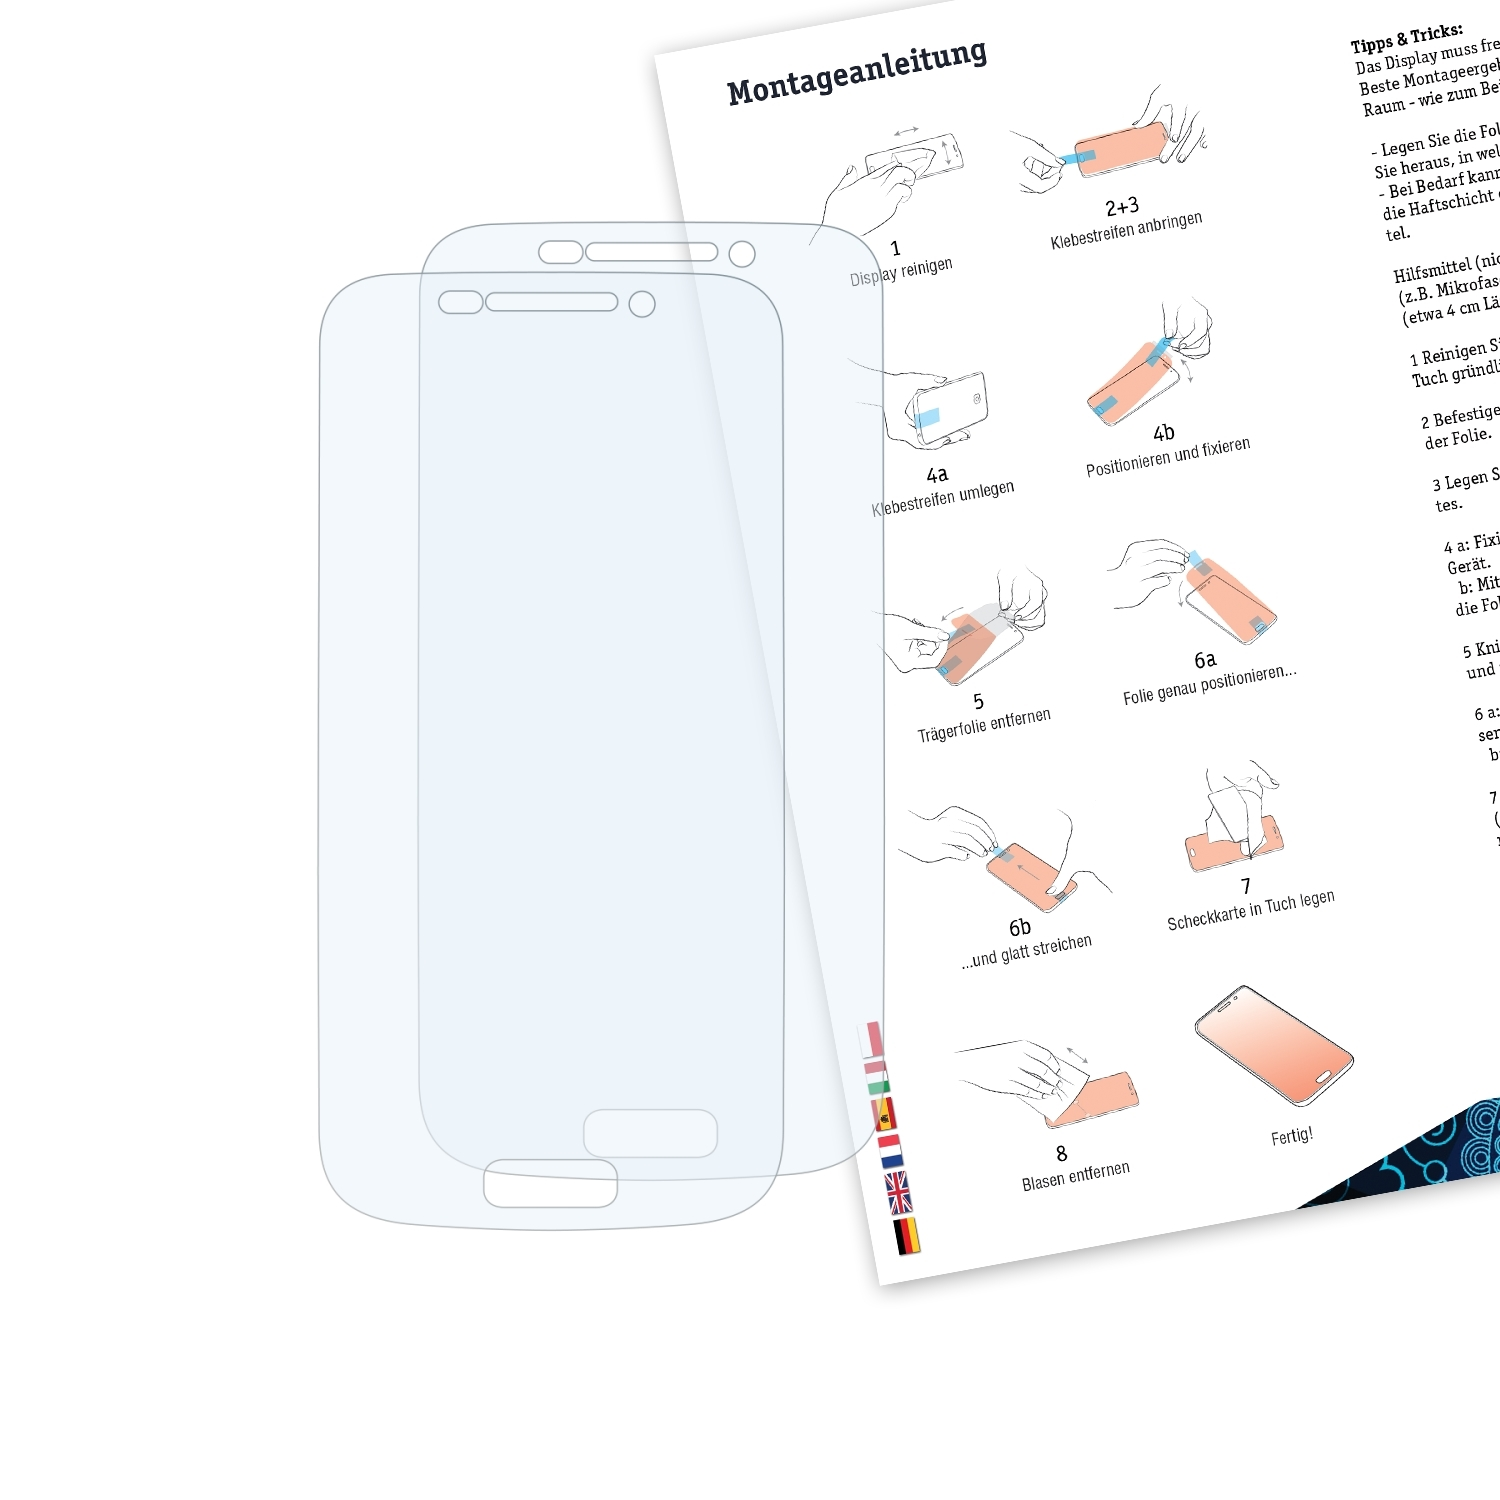 Zoom) BRUNI S4 Schutzfolie(für Basics-Clear Samsung 2x Galaxy